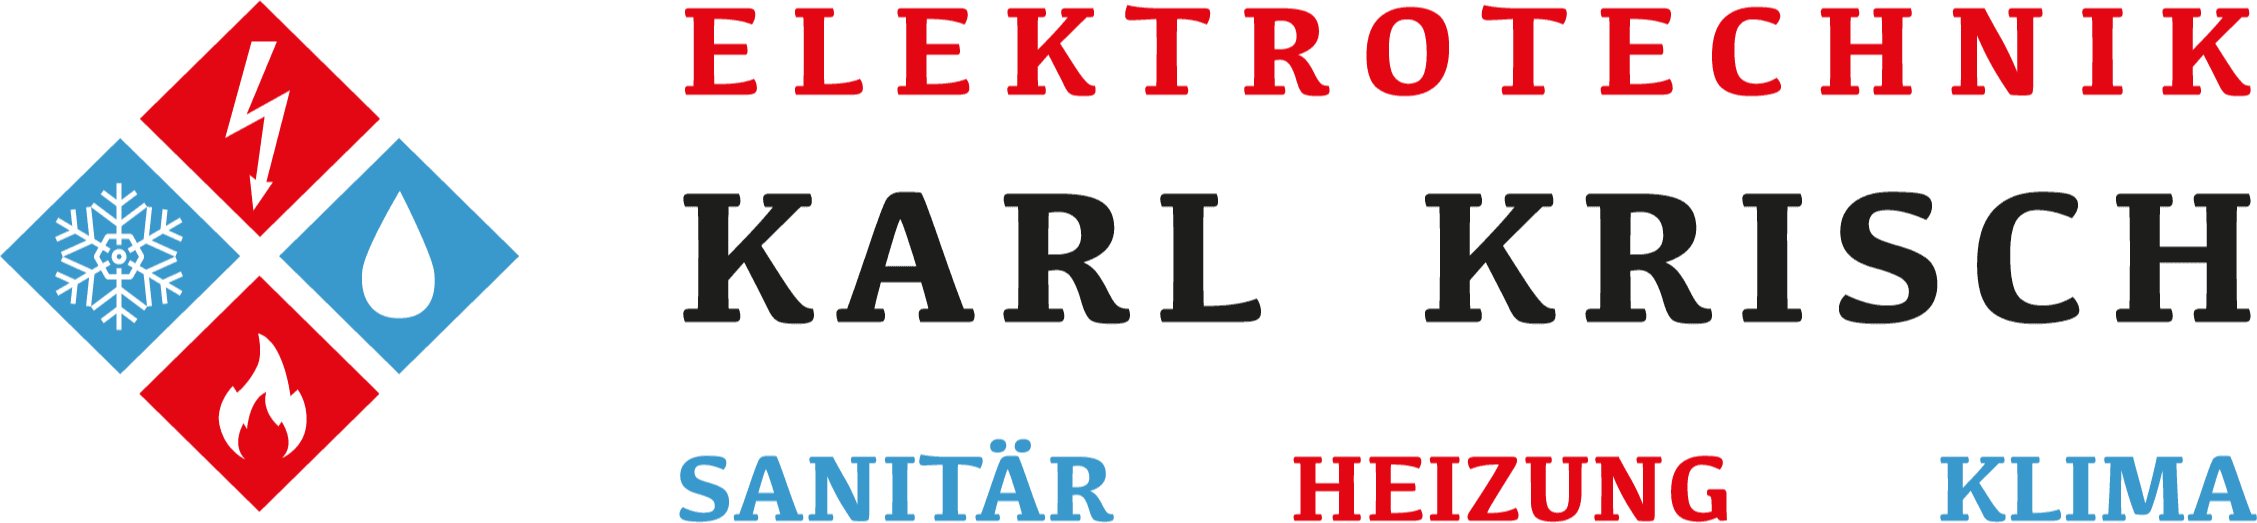 Logo Elektrotechnik Karl Krisch e.U.